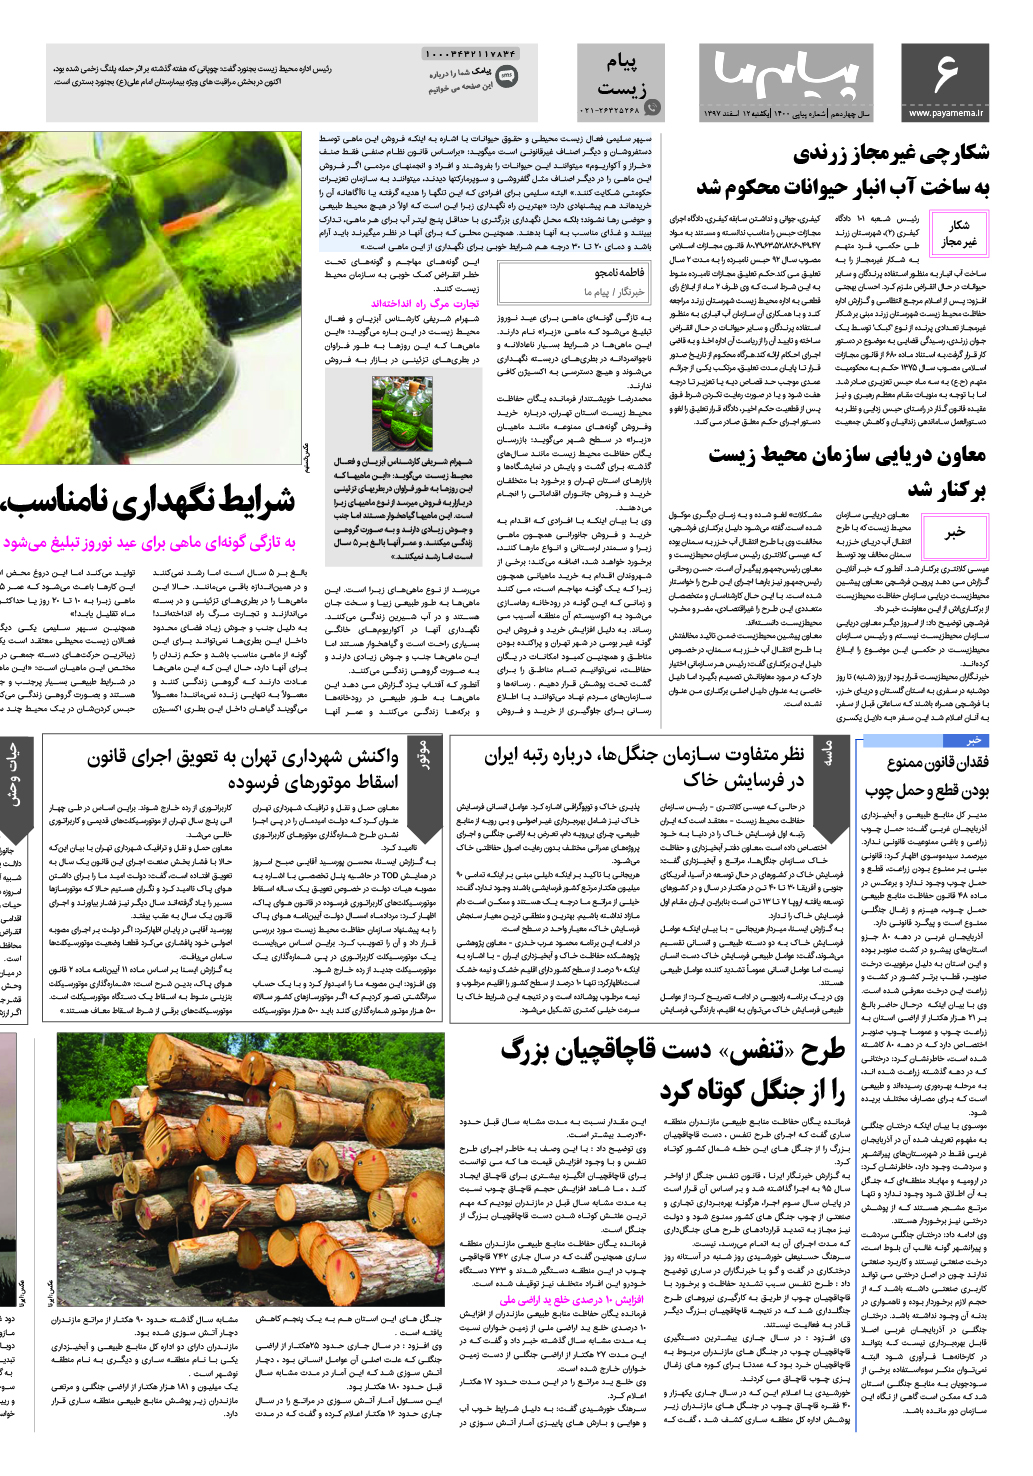 صفحه پیام زیست شماره 1400 روزنامه پیام ما